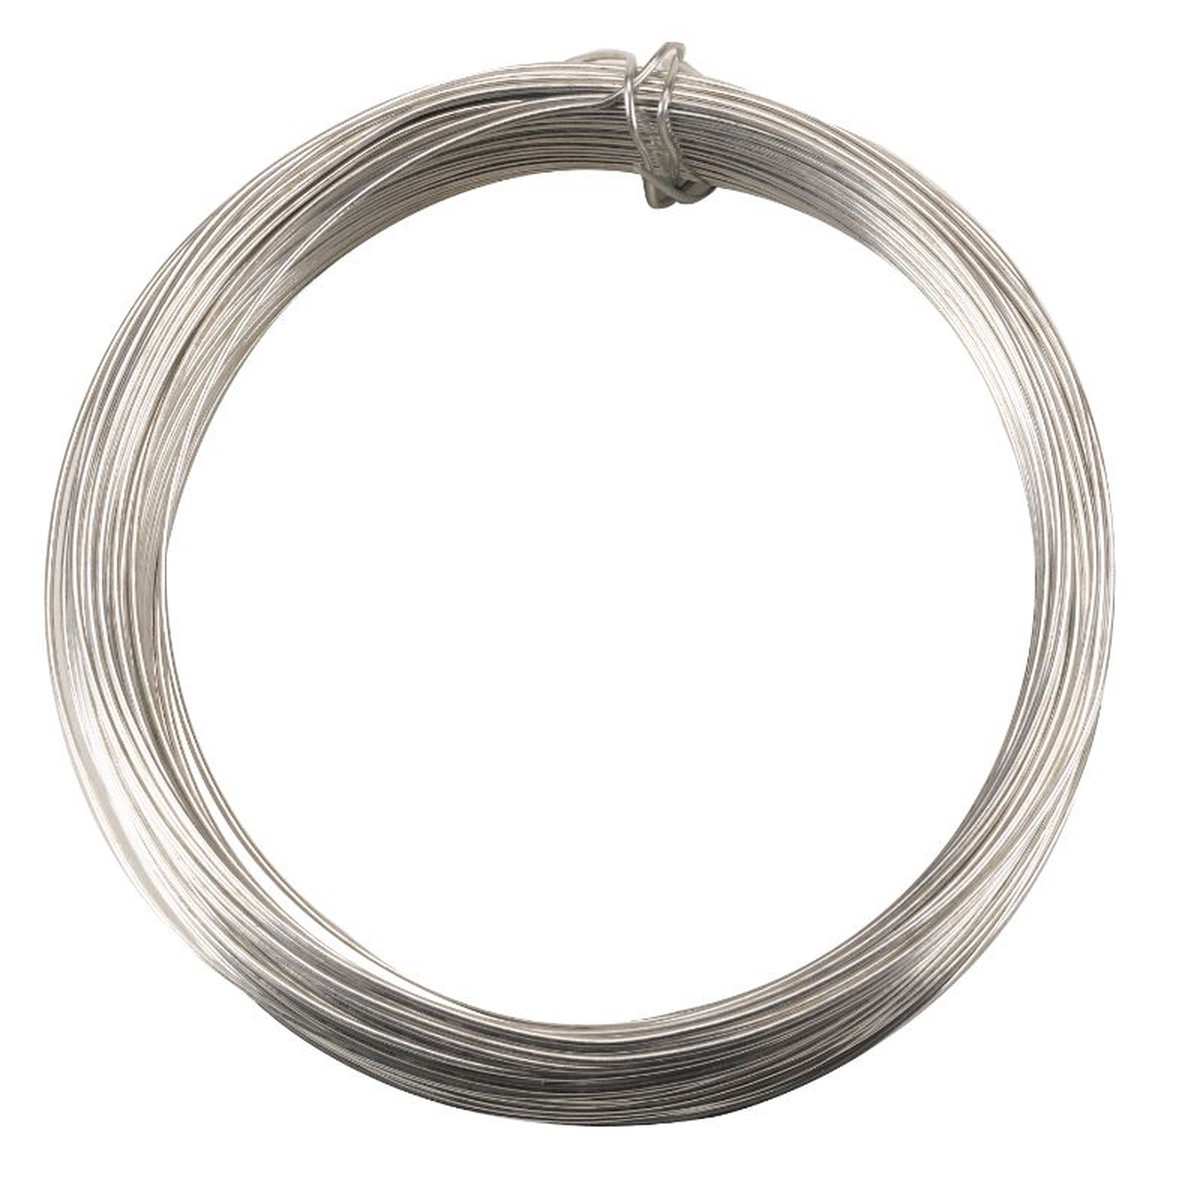   Garden Wire – Galvanised 1mm x 50m  1mmx50m